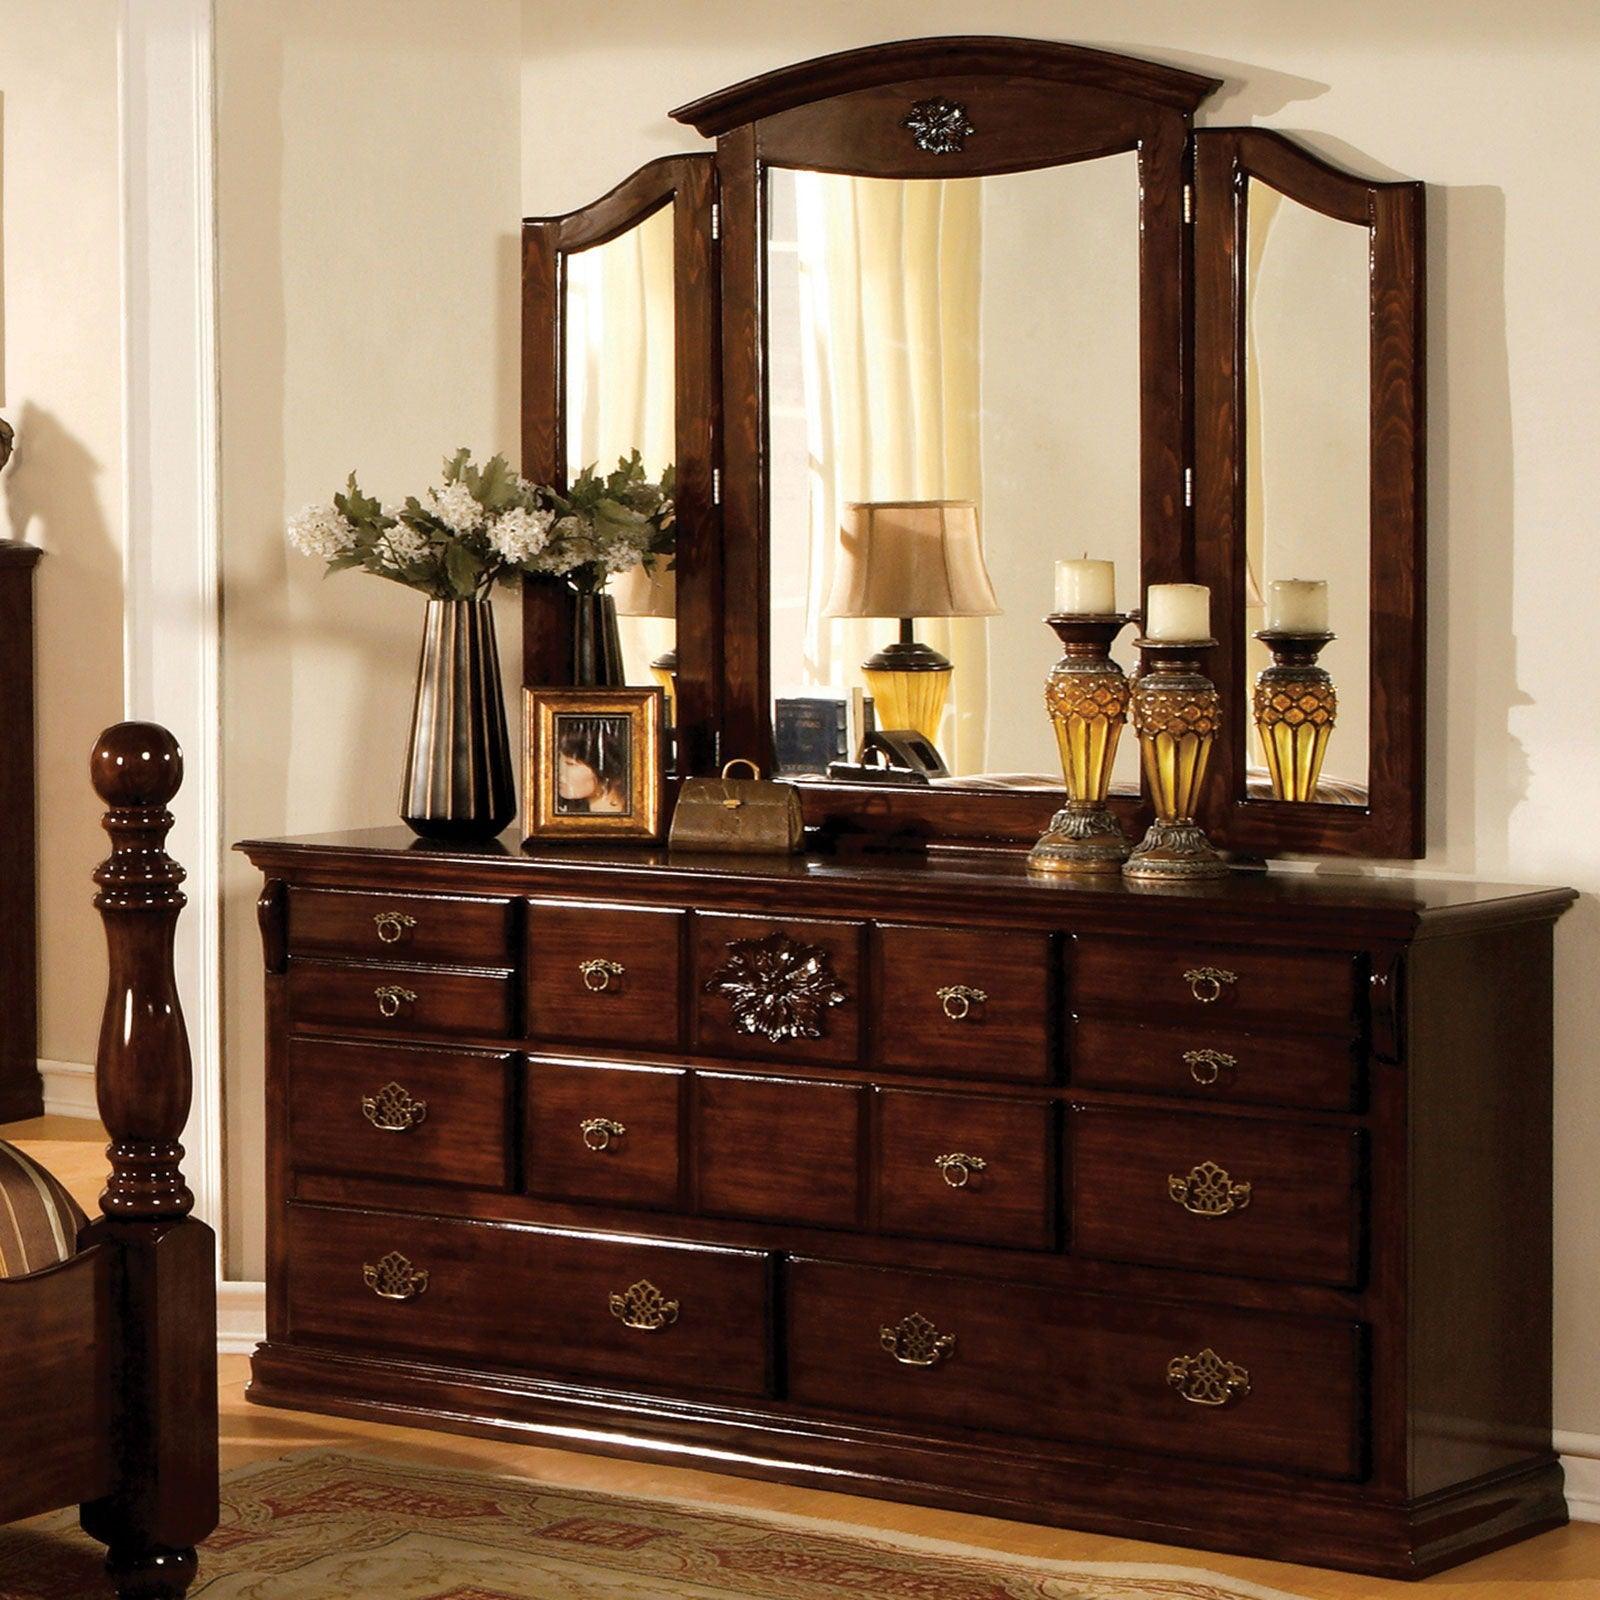 Furniture of America - Tuscan - Dresser - Glossy Dark Pine - 5th Avenue Furniture